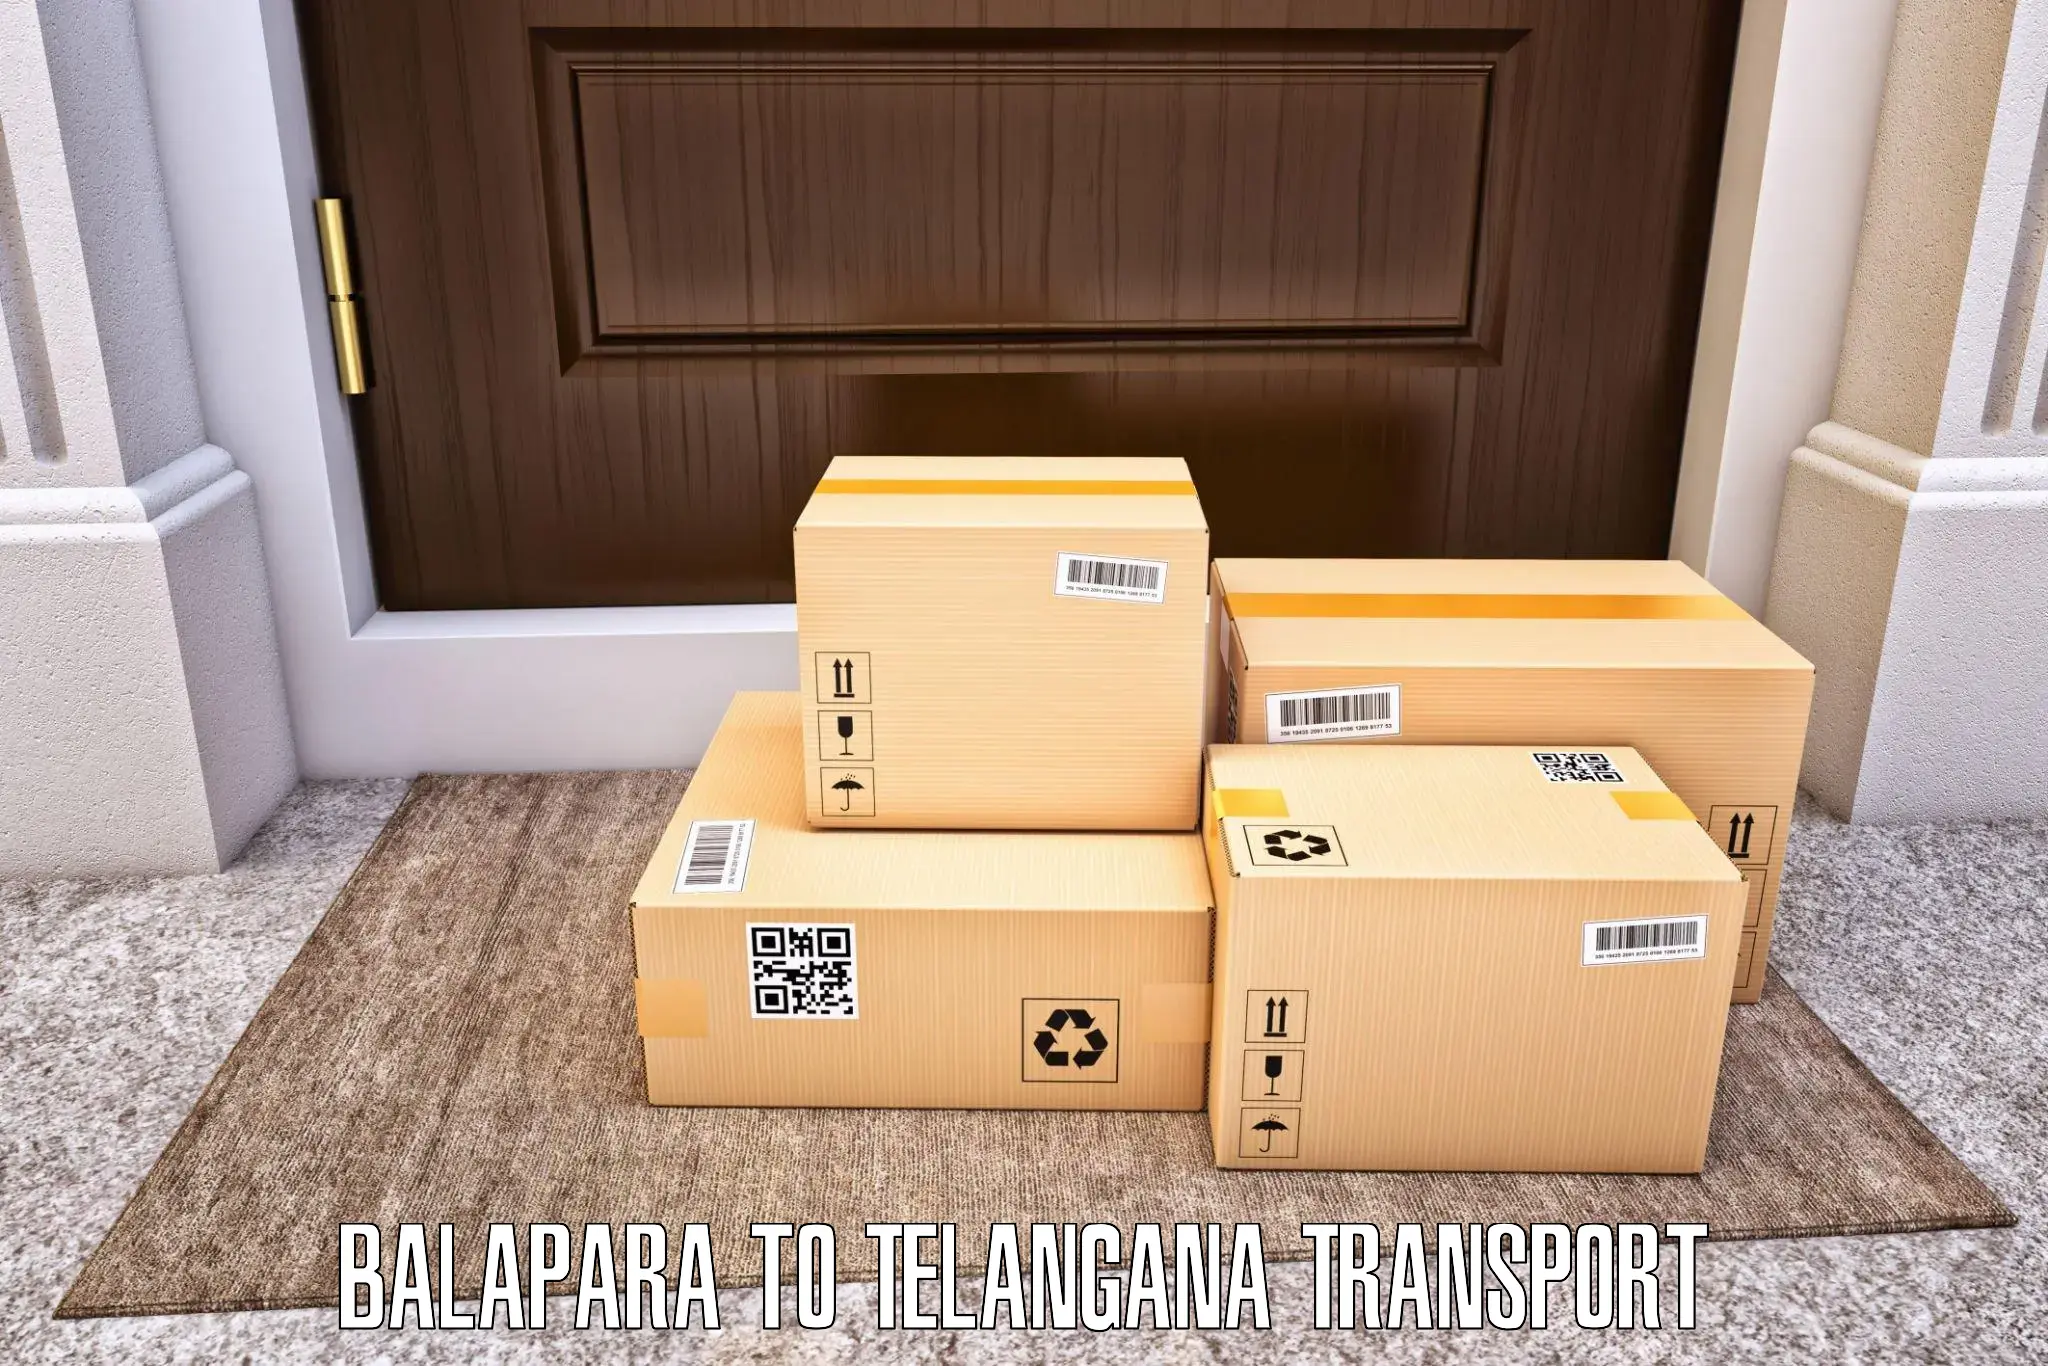 Vehicle transport services Balapara to Babasagar